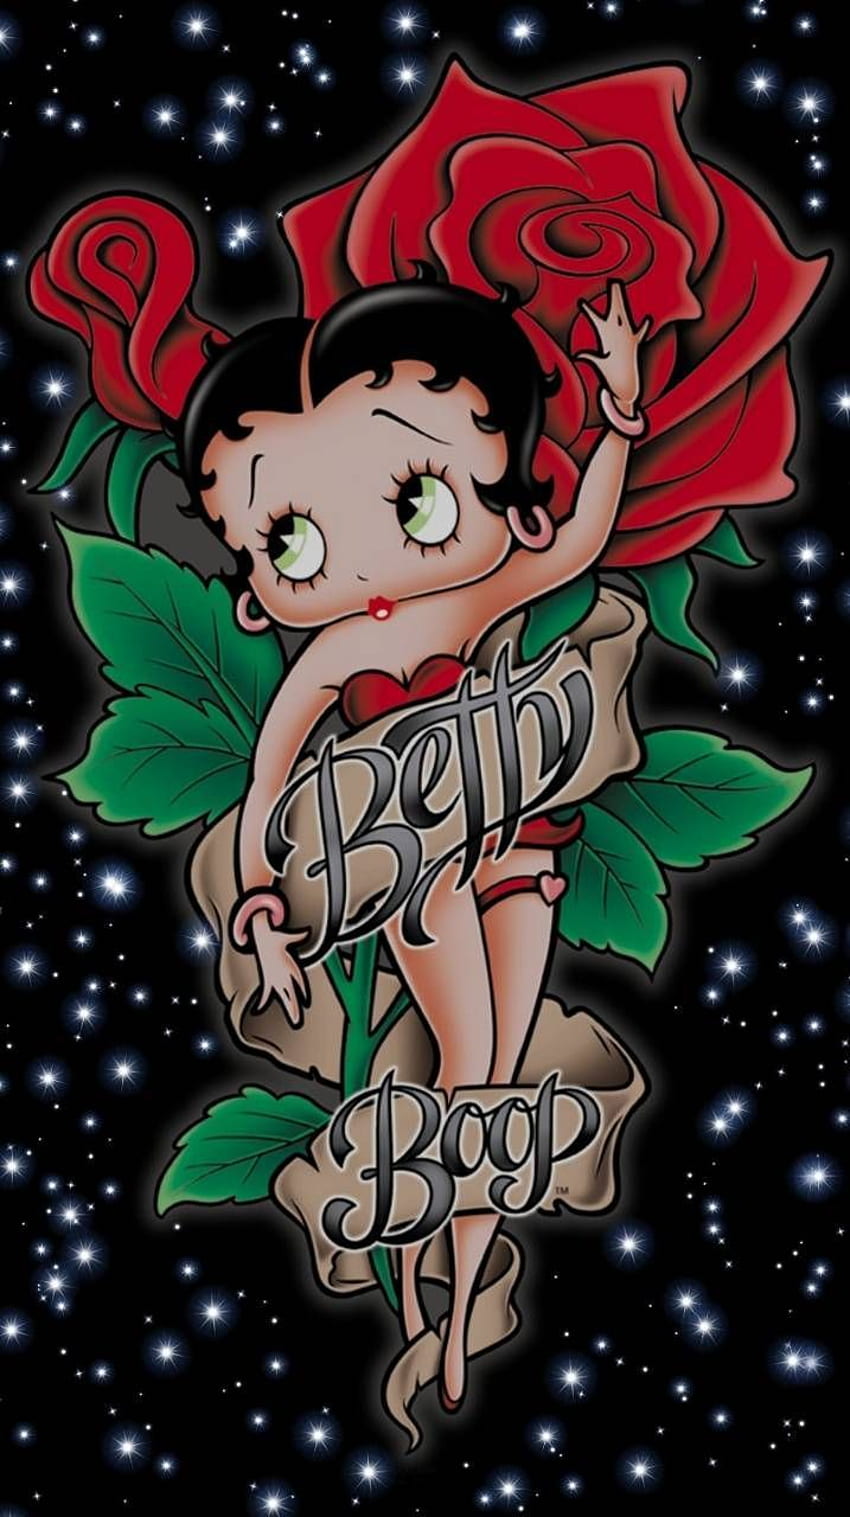 Betty Boop subió por Glendalizz69 - c1 ahora. Explore millones de populares. Betty boop, arte de Betty boop, dibujos animados de Betty boop, rosa linda de dibujos animados fondo de pantalla del teléfono